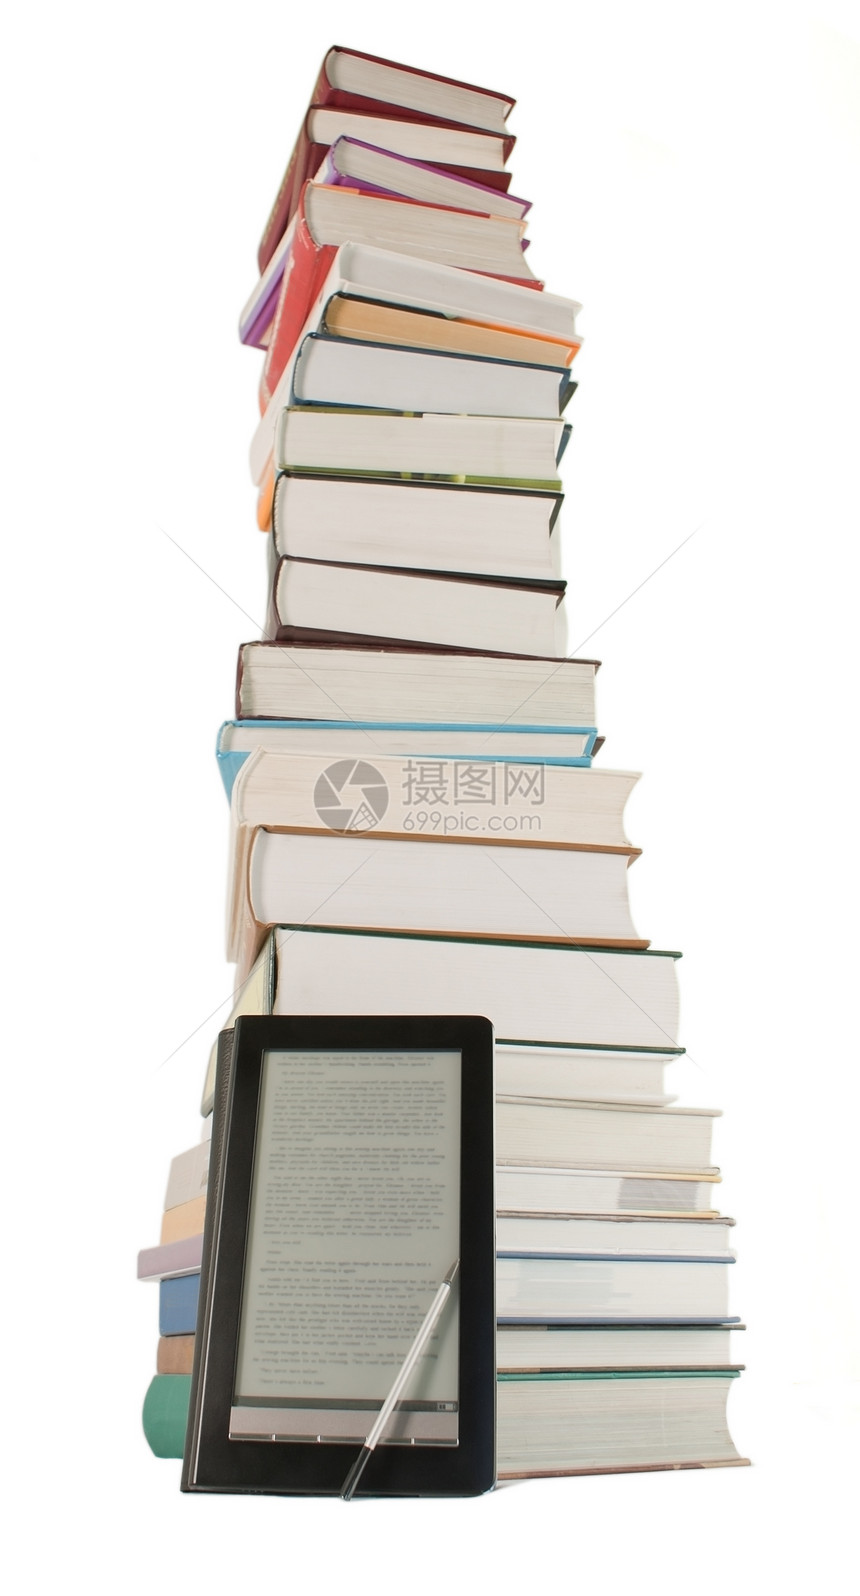 白色背景的高堆书本和电子书籍阅读器白人背景教育文学电子书技术小说笔尖读者教科书数字化展示图片